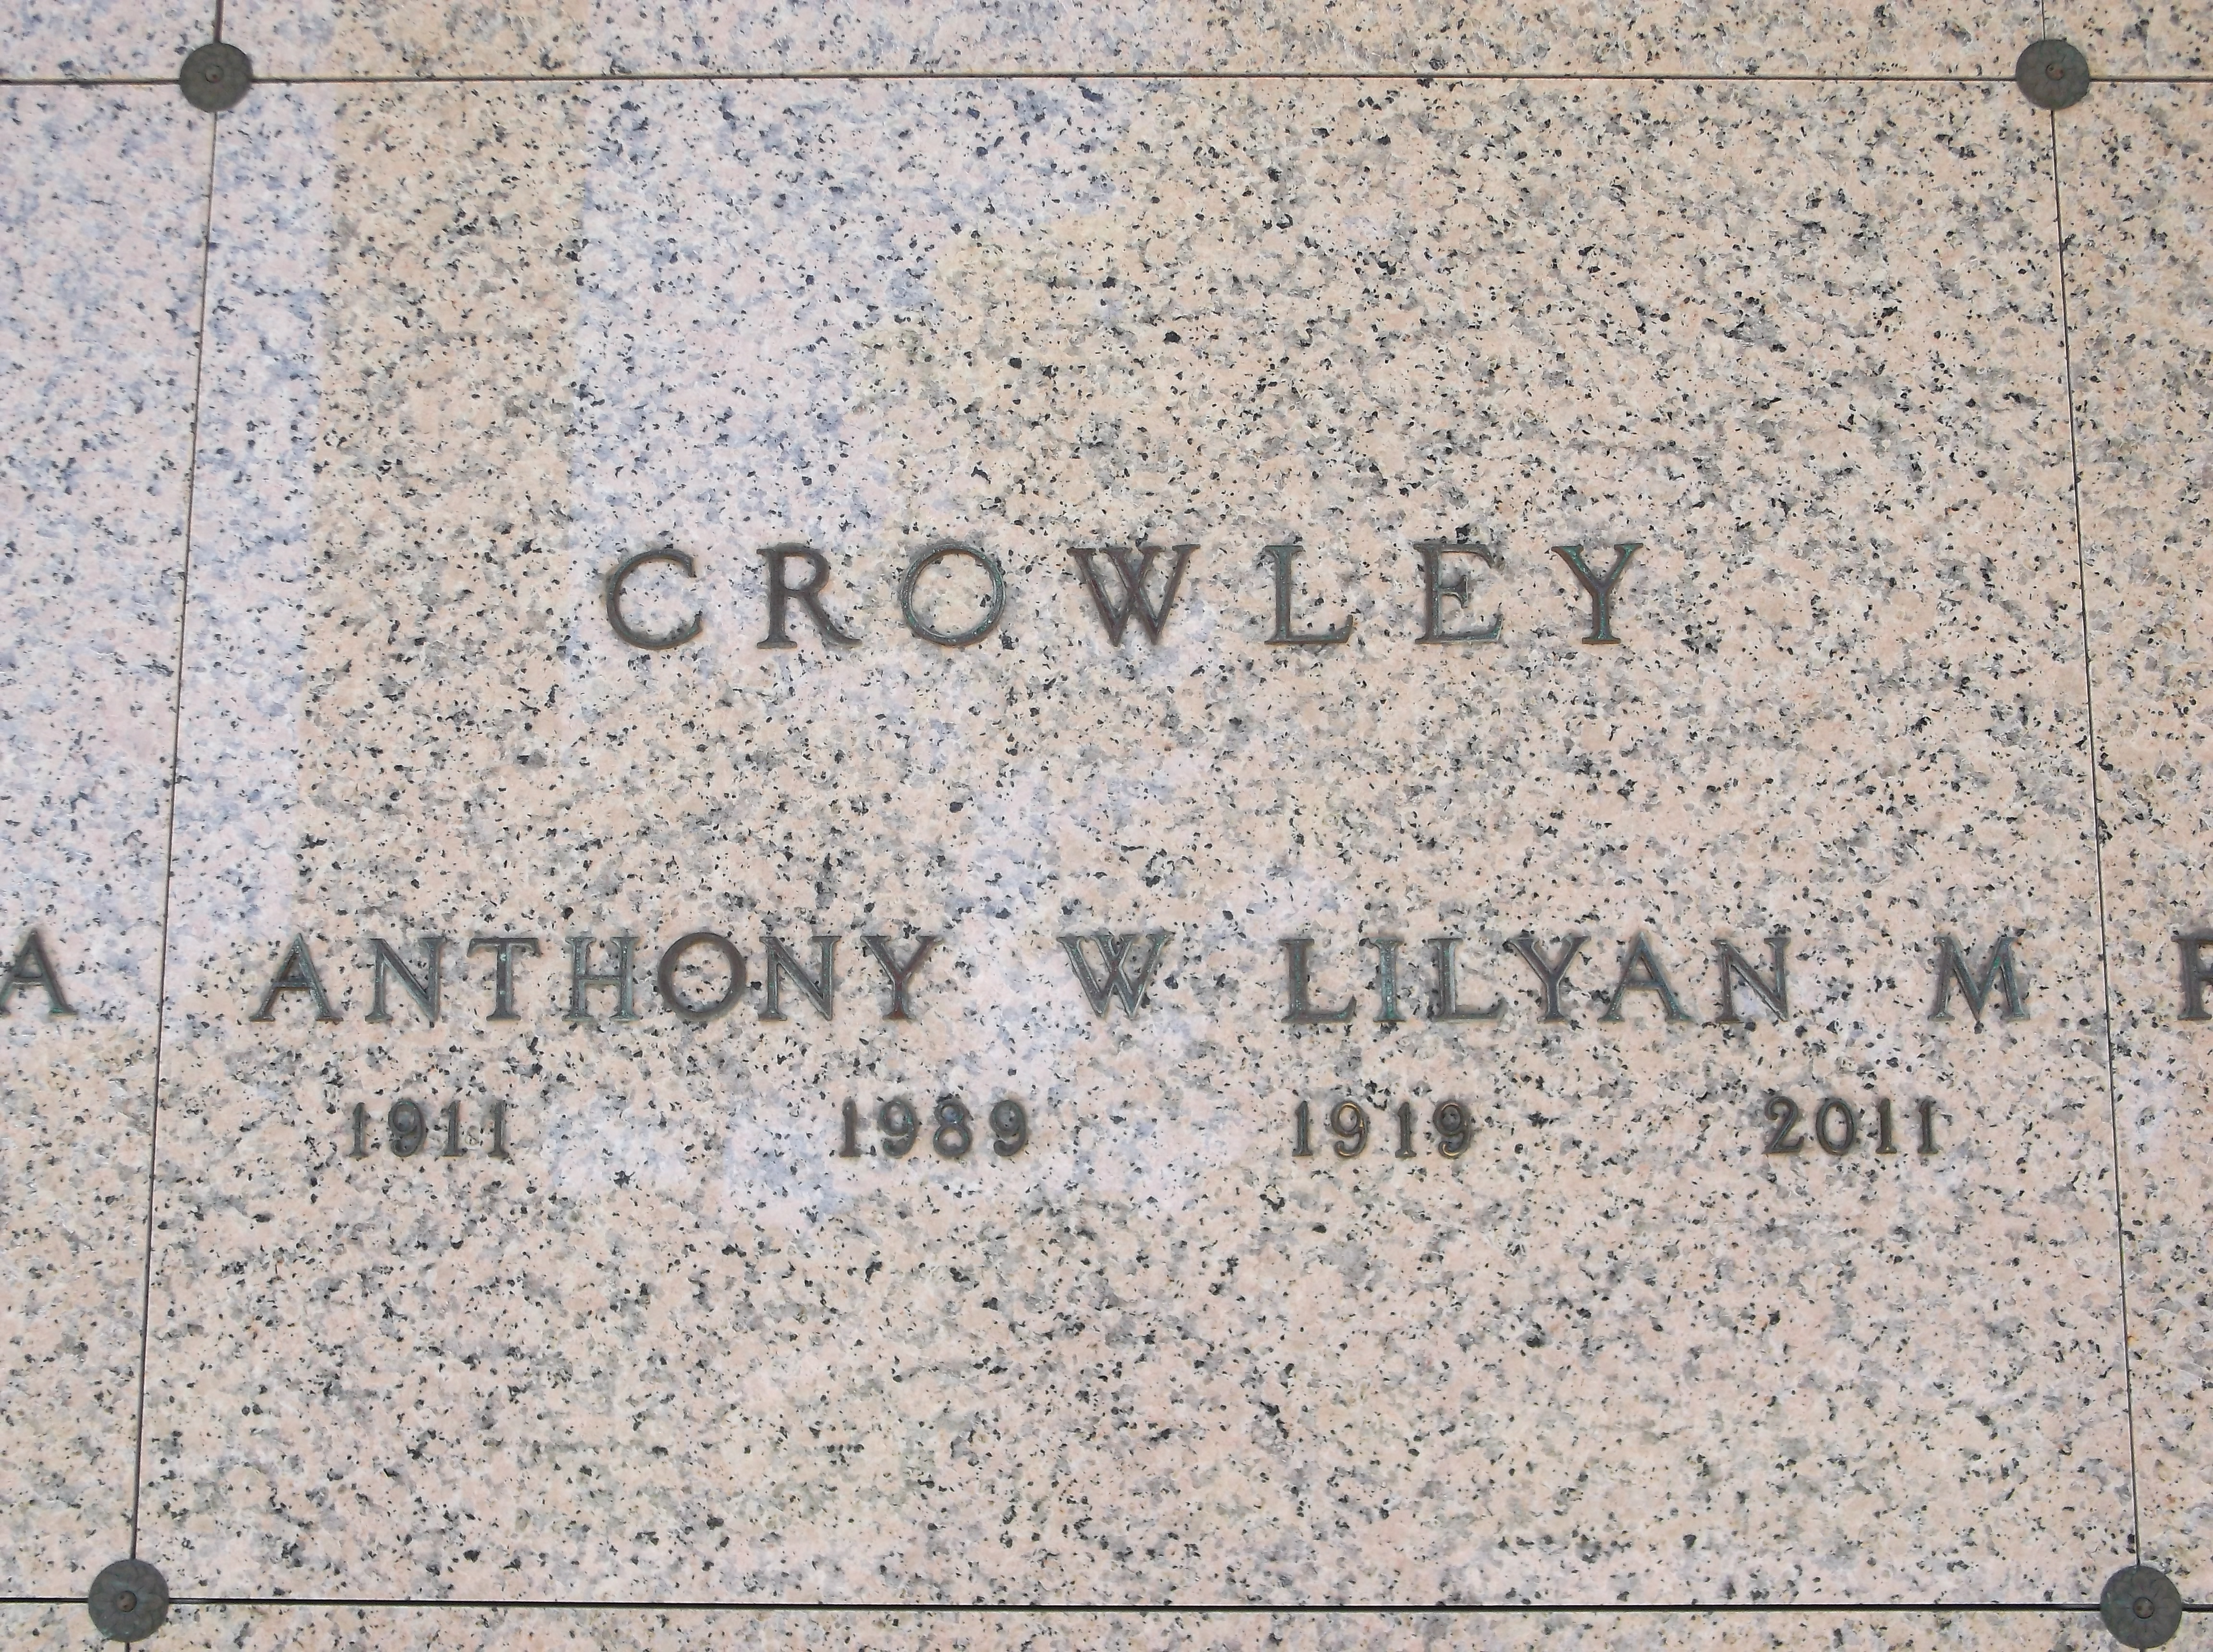 Anthony W Crowley